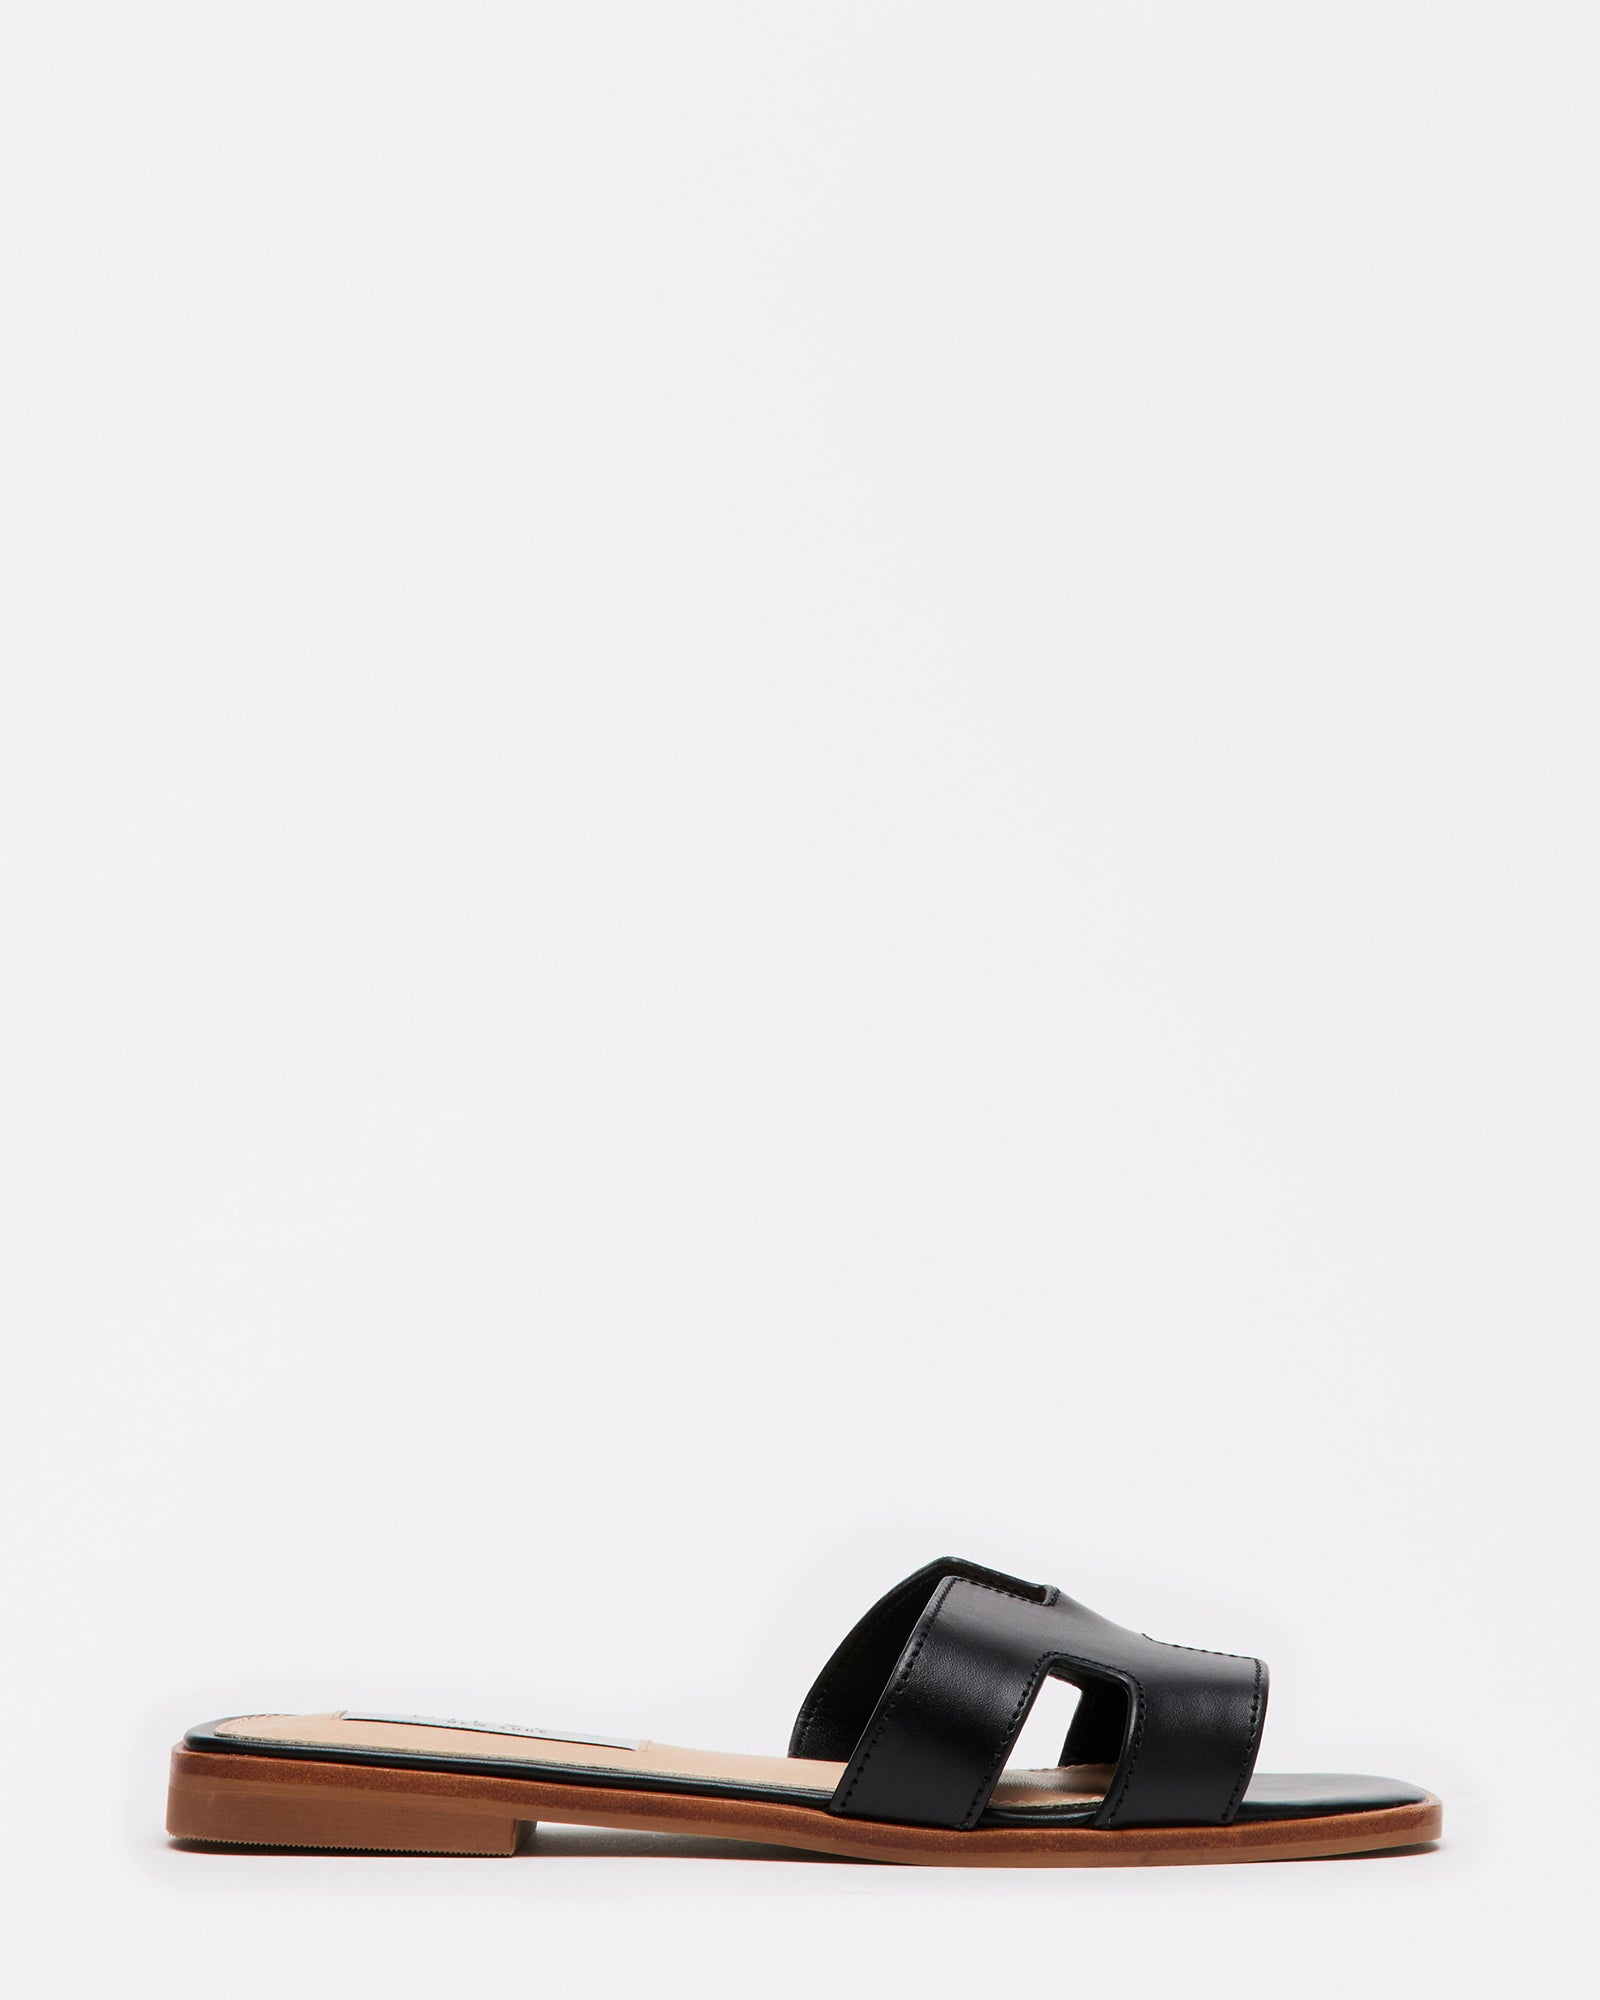 HADYN Black Leather Sandal | Women's Designer Sandals – Steve Madden